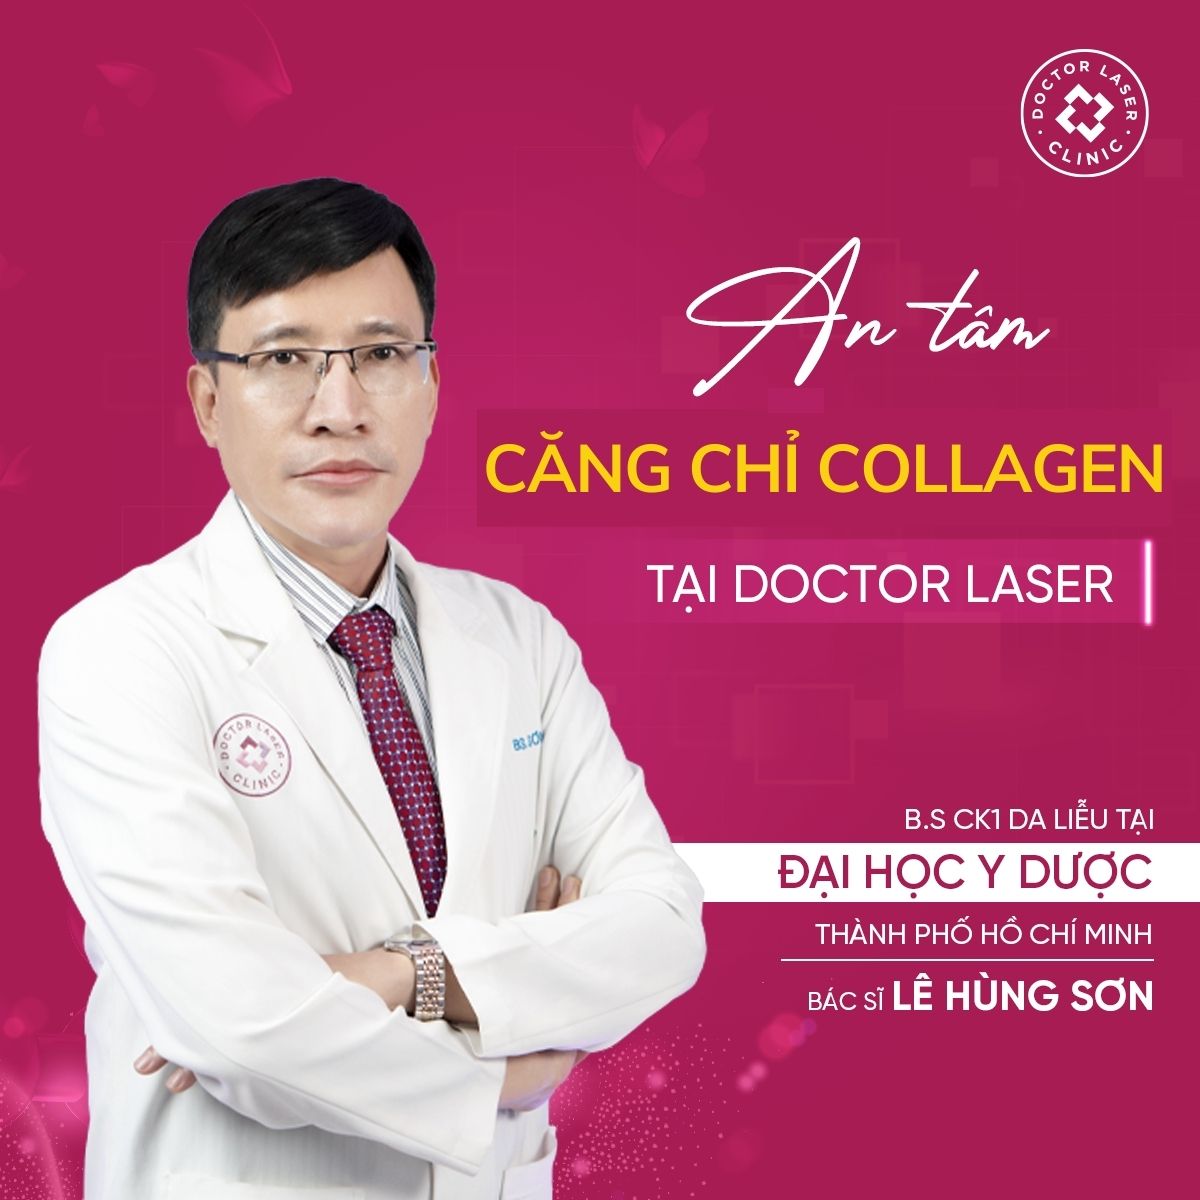 Bác sĩ Lê Hùng Sơn của Doctor Laser giải đap về căng chỉ collagen